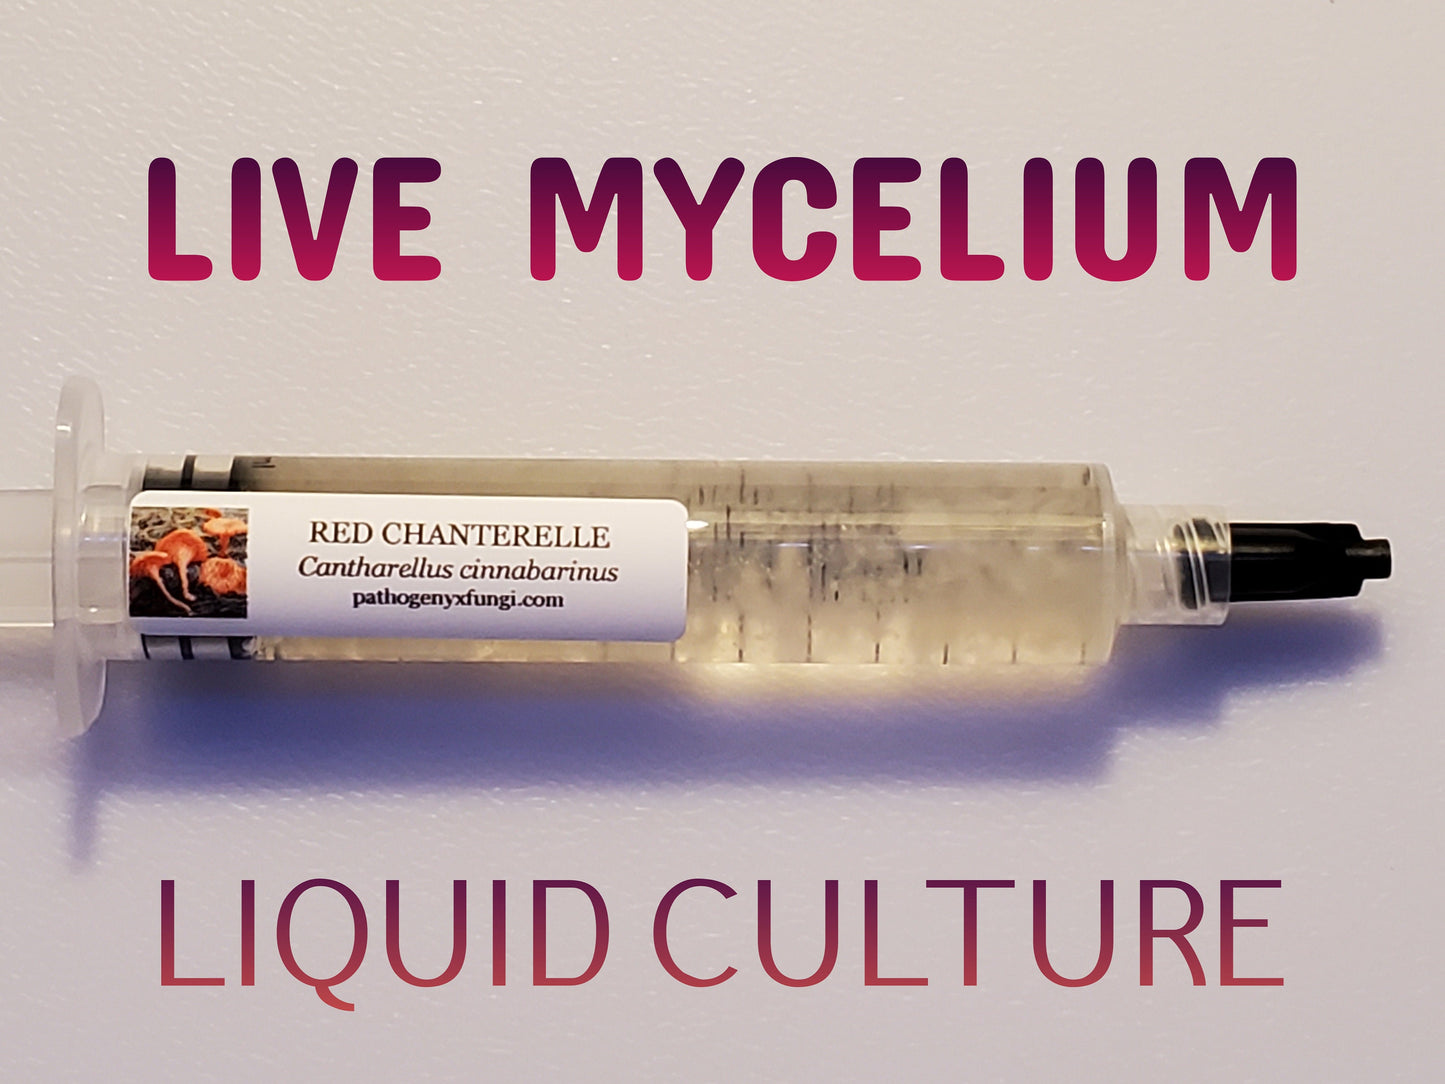 RED CHANTERELLE Mushroom, liquid culture syringe, Premium Mycelium™